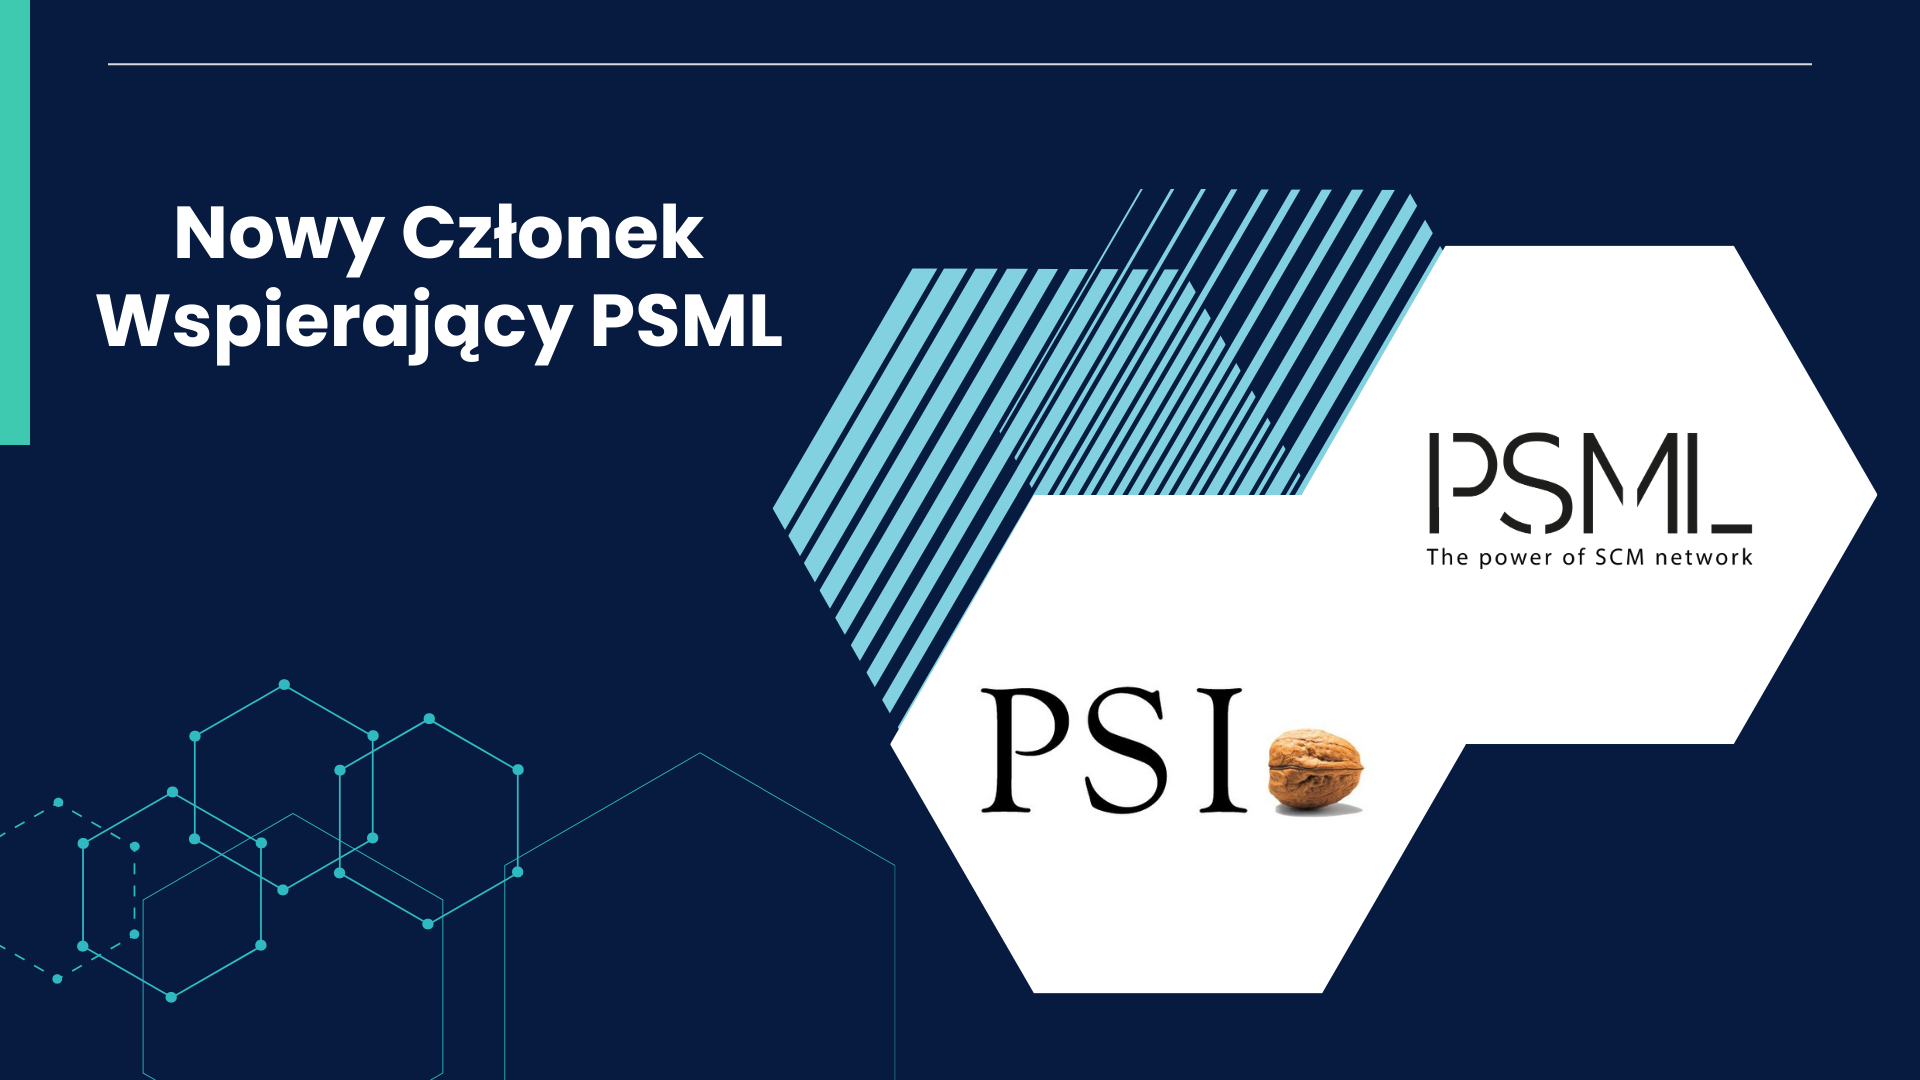 Nowy Członek Wspierający PSML – PSI Polska Sp. z o.o.